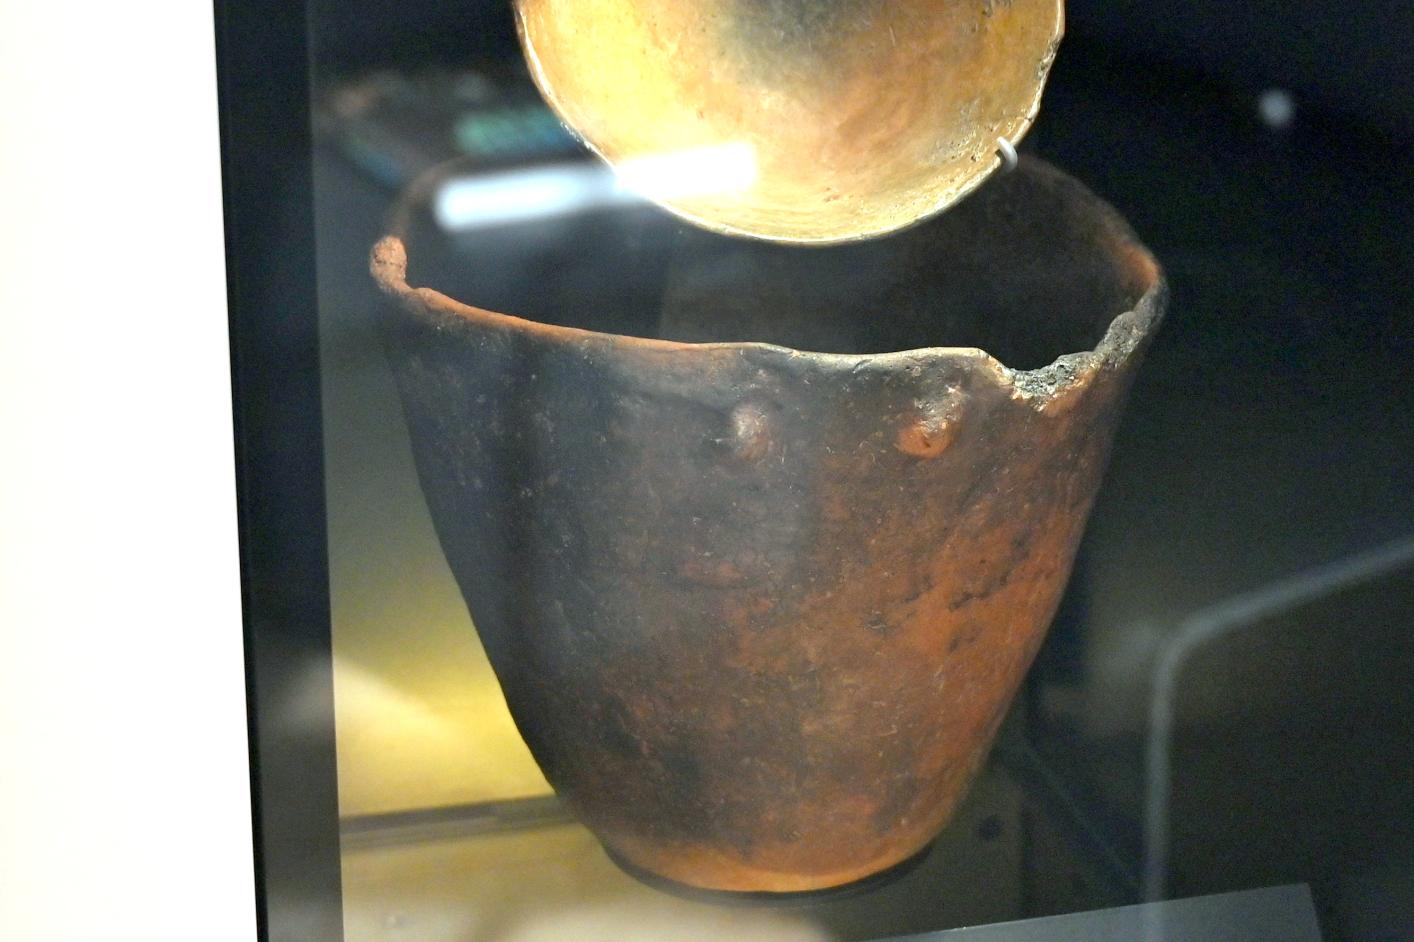 Kochtopf, Neolithikum (Jungsteinzeit), 5500 - 1700 v. Chr., 3800 - 3600 v. Chr., Bild 1/2